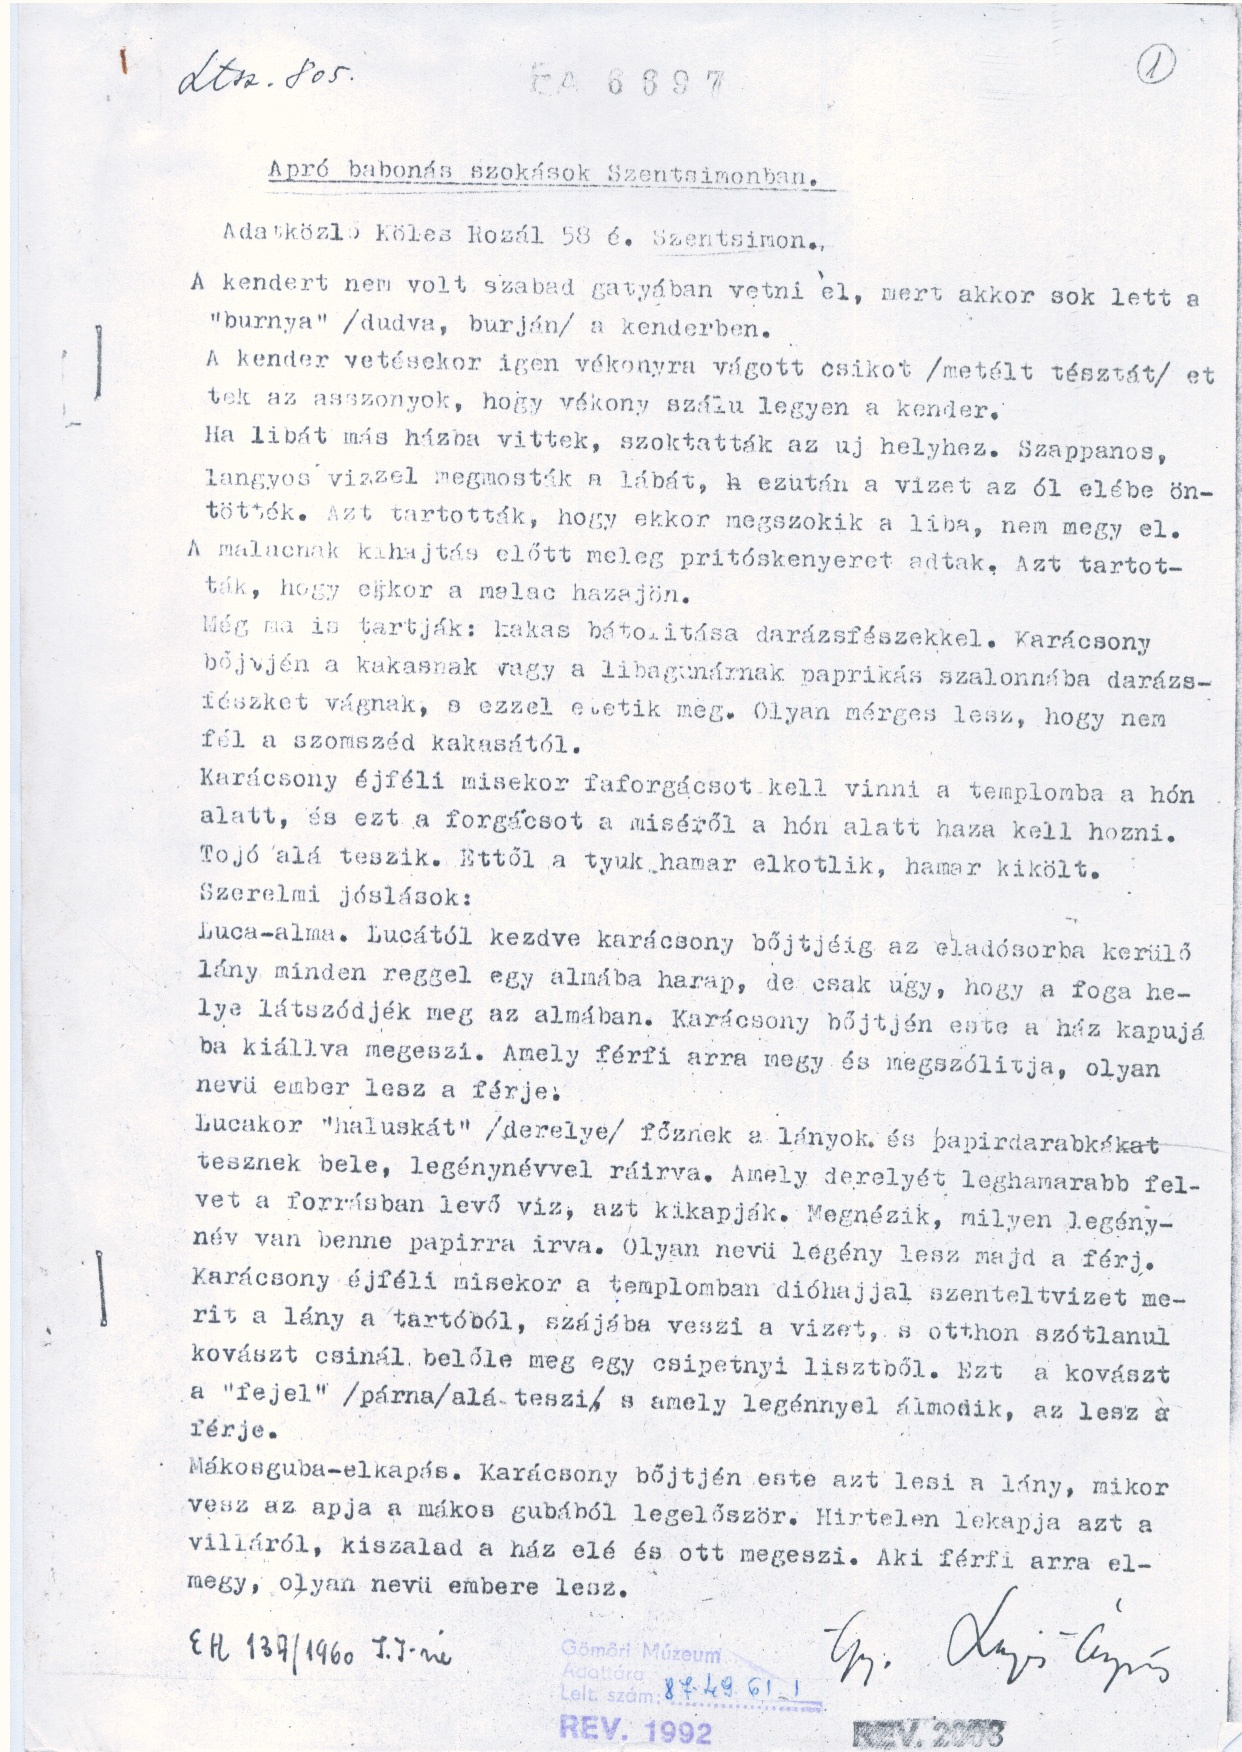 Lajos Ćrpád: "Apró babonás szokások Szentsimonban" 1960 (Gömöri Múzeum, Putnok CC BY-NC-SA)